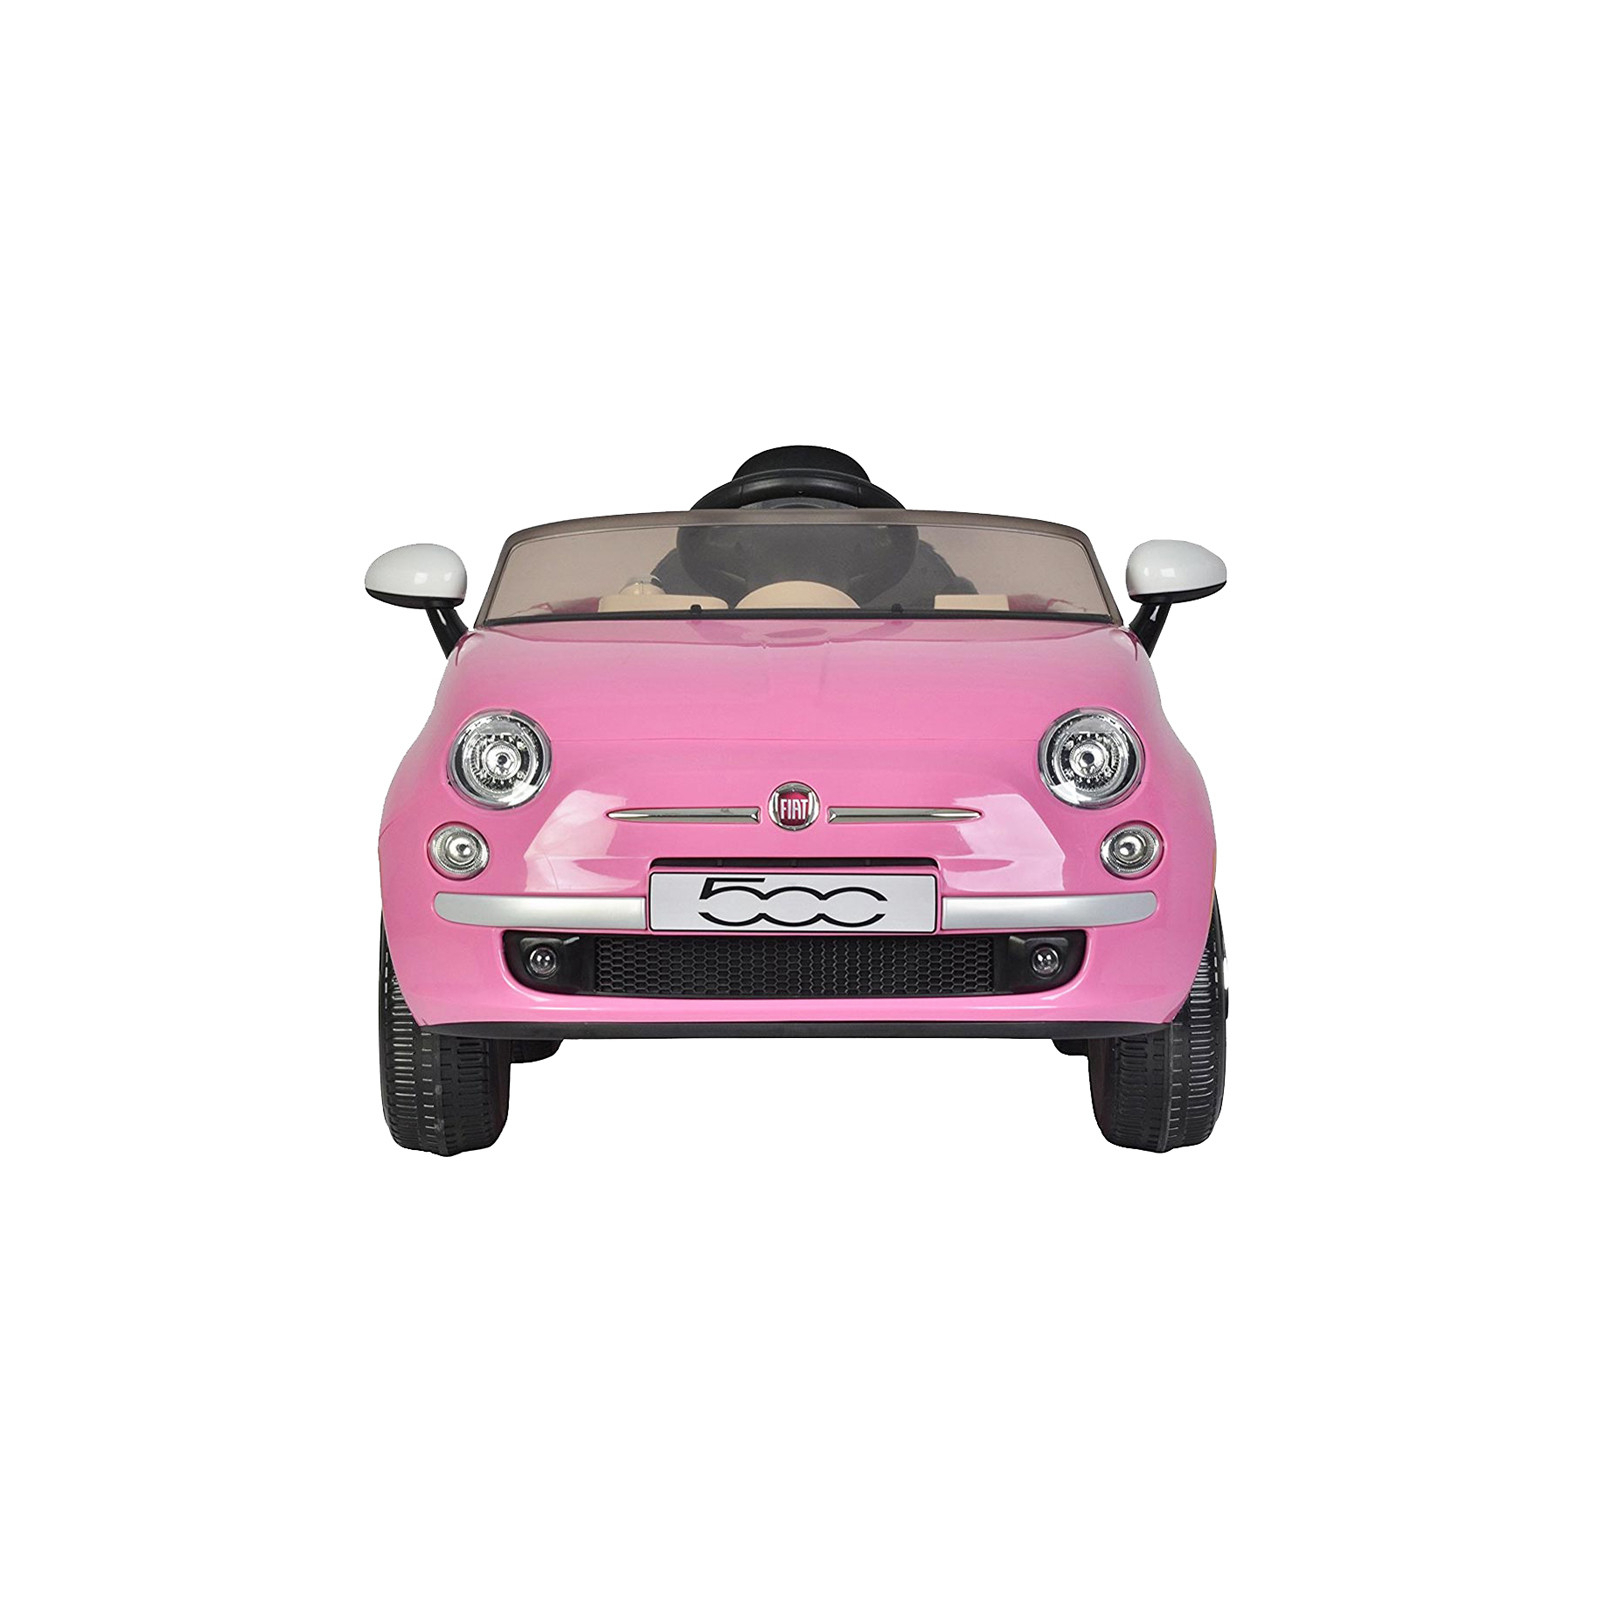 Электромобиль BabyHit Fiat Z651R Pink (71142) изображение 2